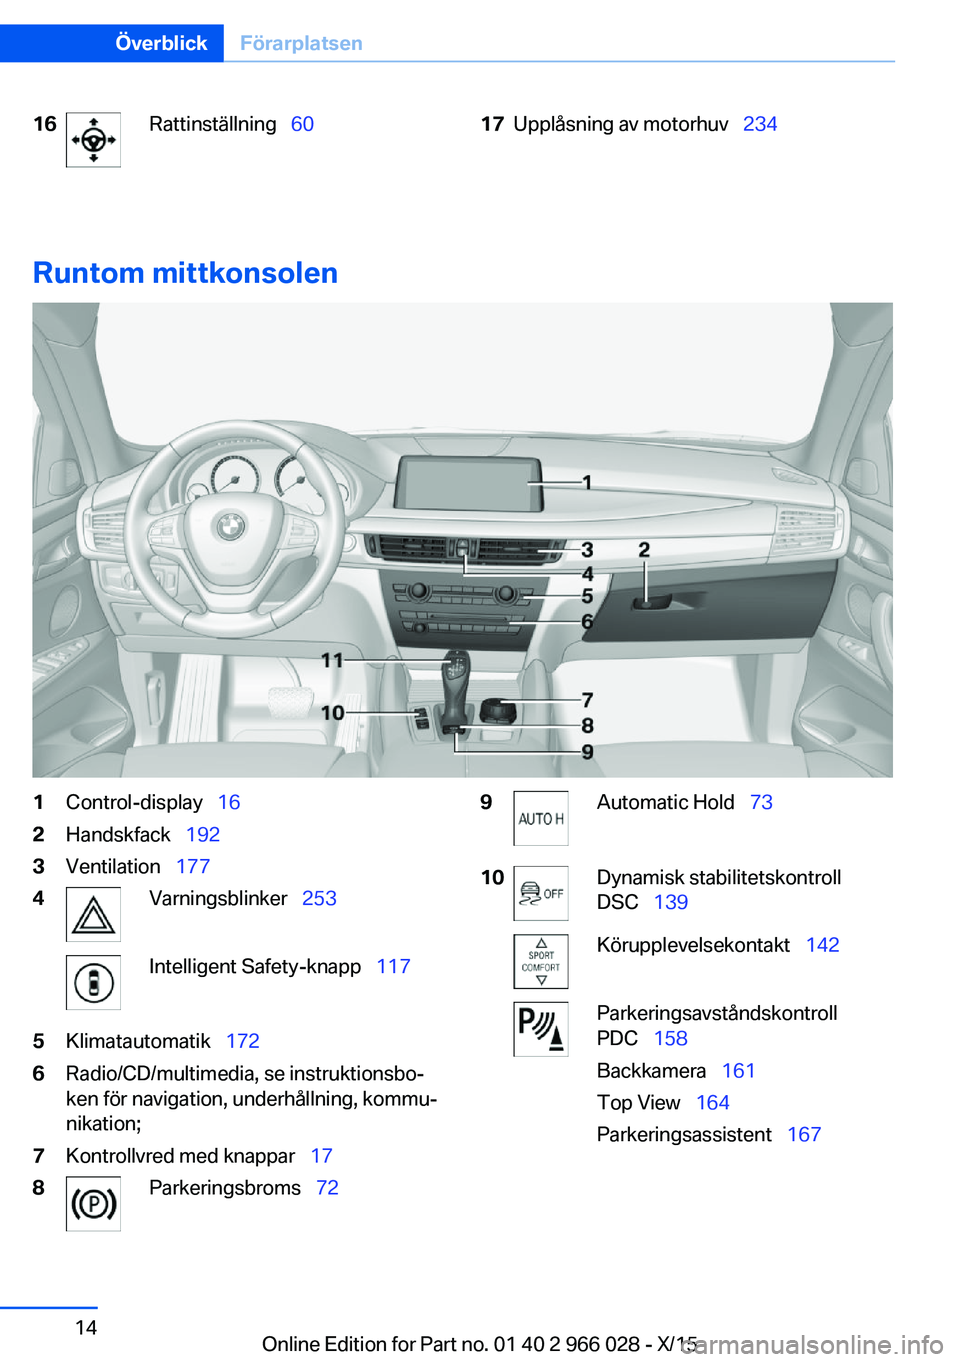 BMW X6 2016  InstruktionsbÖcker (in Swedish) 16Rattinställning  6017Upplåsning av motorhuv   234
Runtom mittkonsolen
1Control-display  162Handskfack  1923Ventilation  1774Varningsblinker   253Intelligent Safety-knapp 